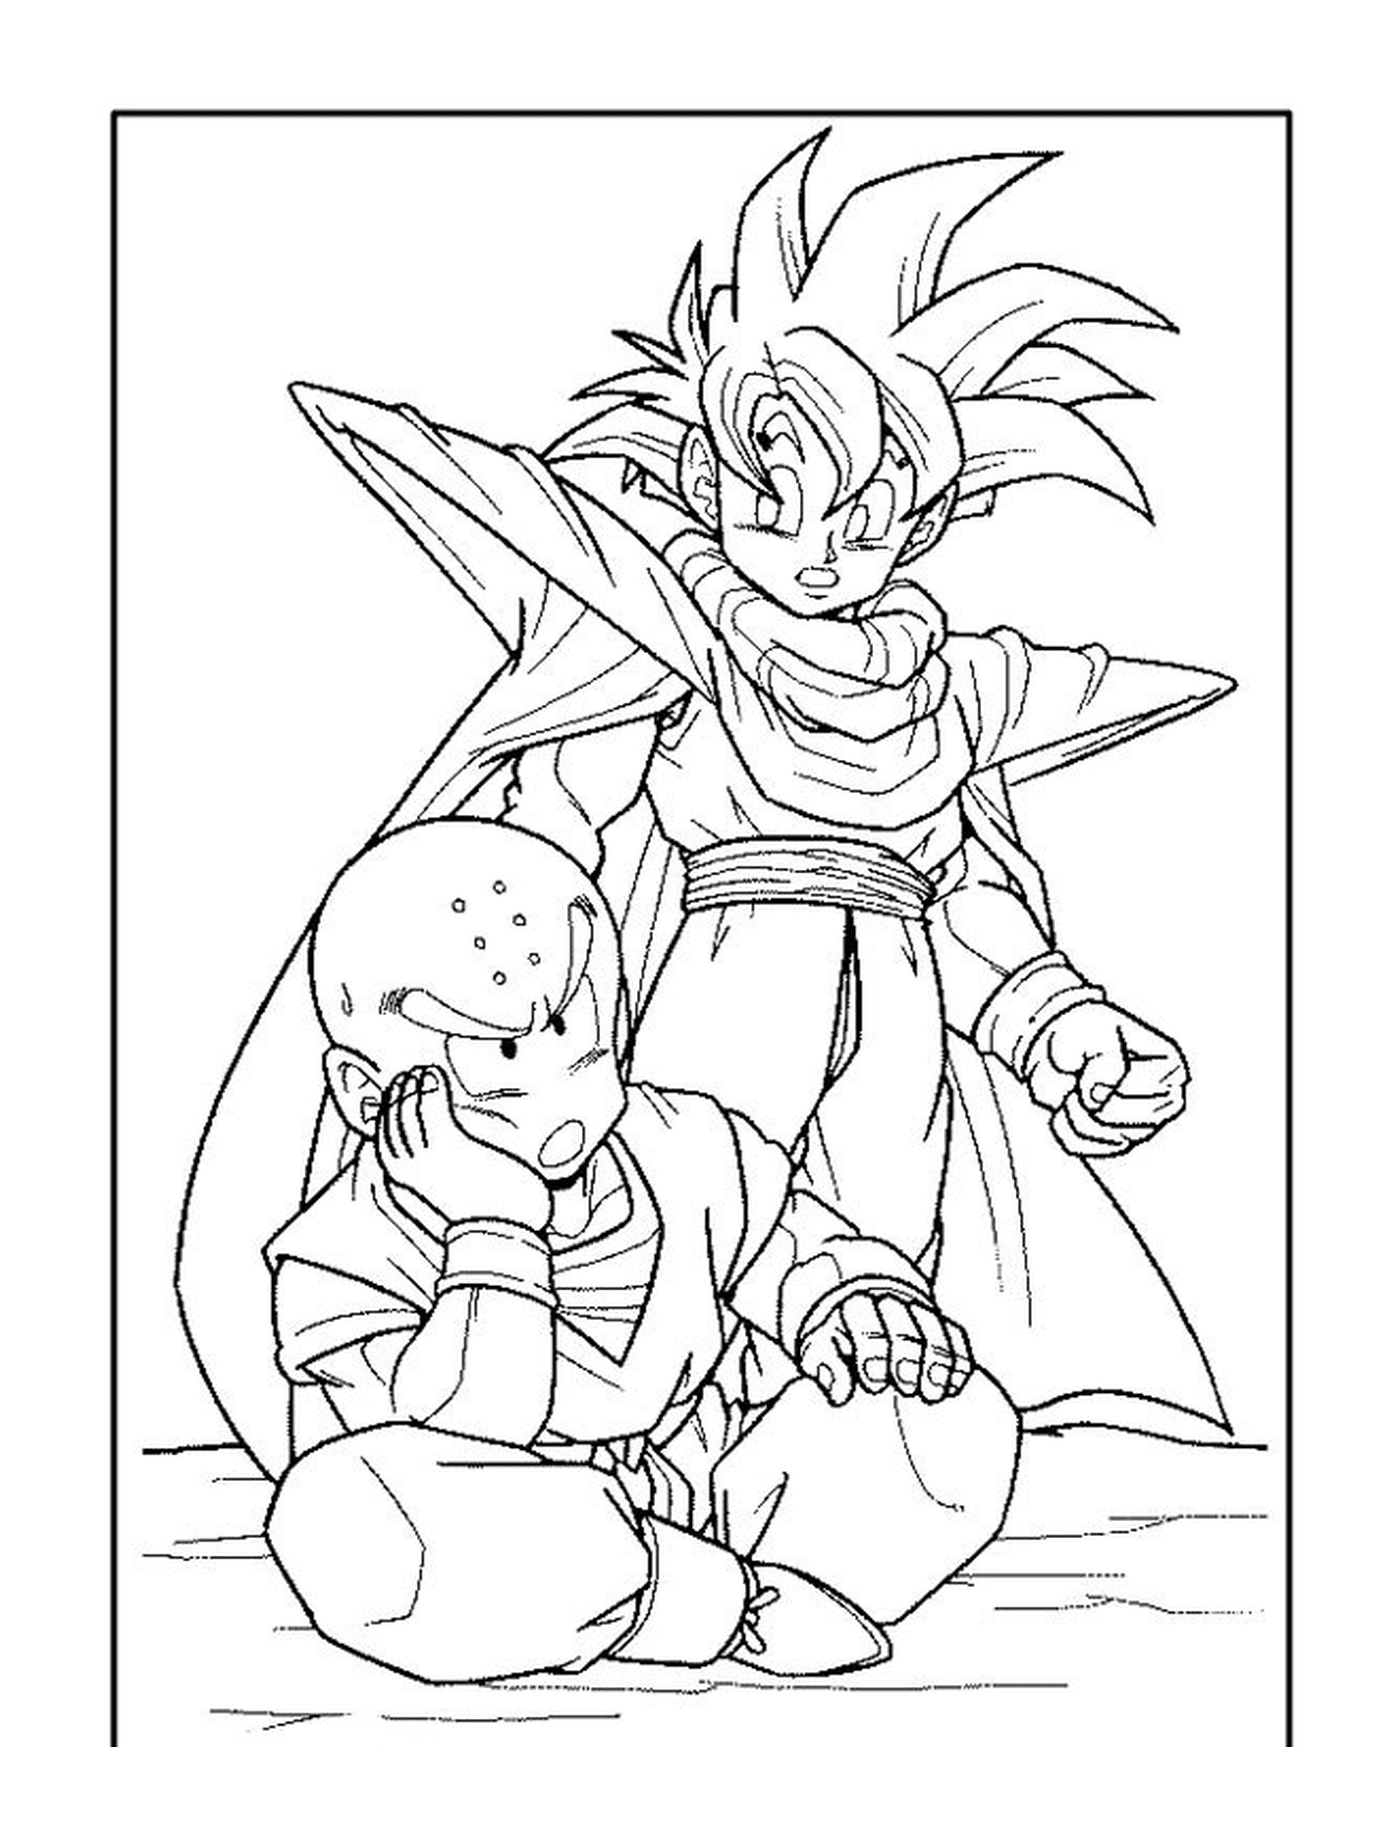  Goku und Krillin, Duett von Dragon Ball Z 